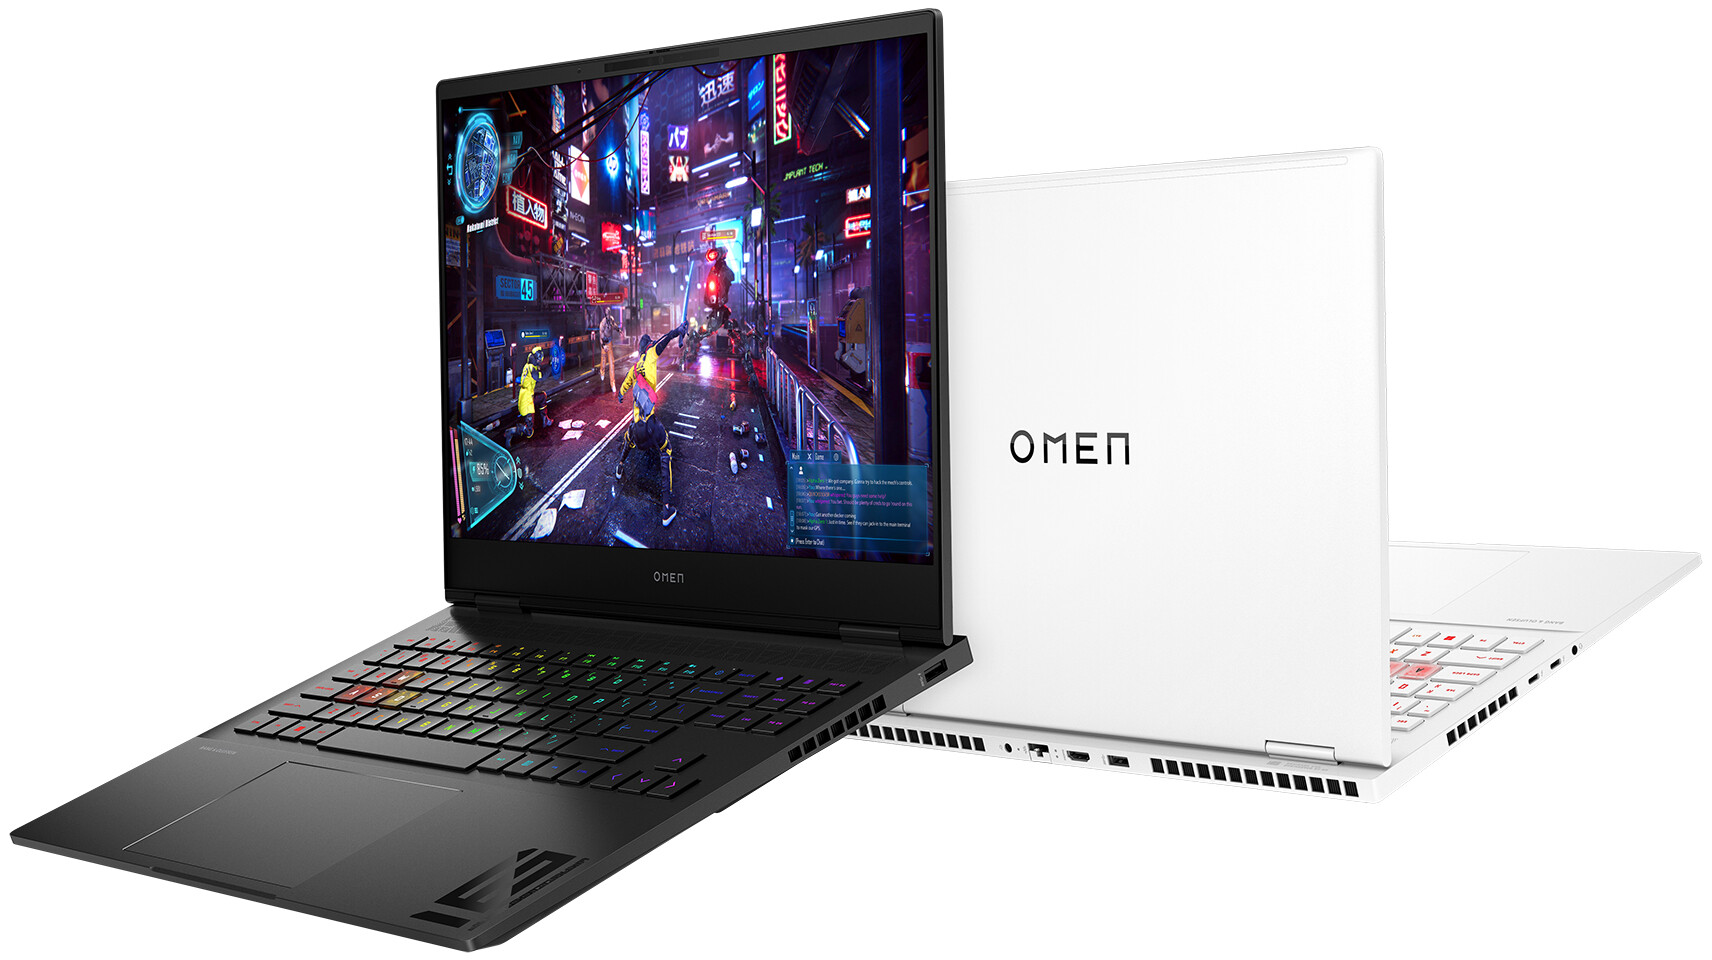 HP prezentuje laptopy Omen z układami Intela i AMD oraz grafiką GeForce RTX 40 w cenie od 1300 dolarów